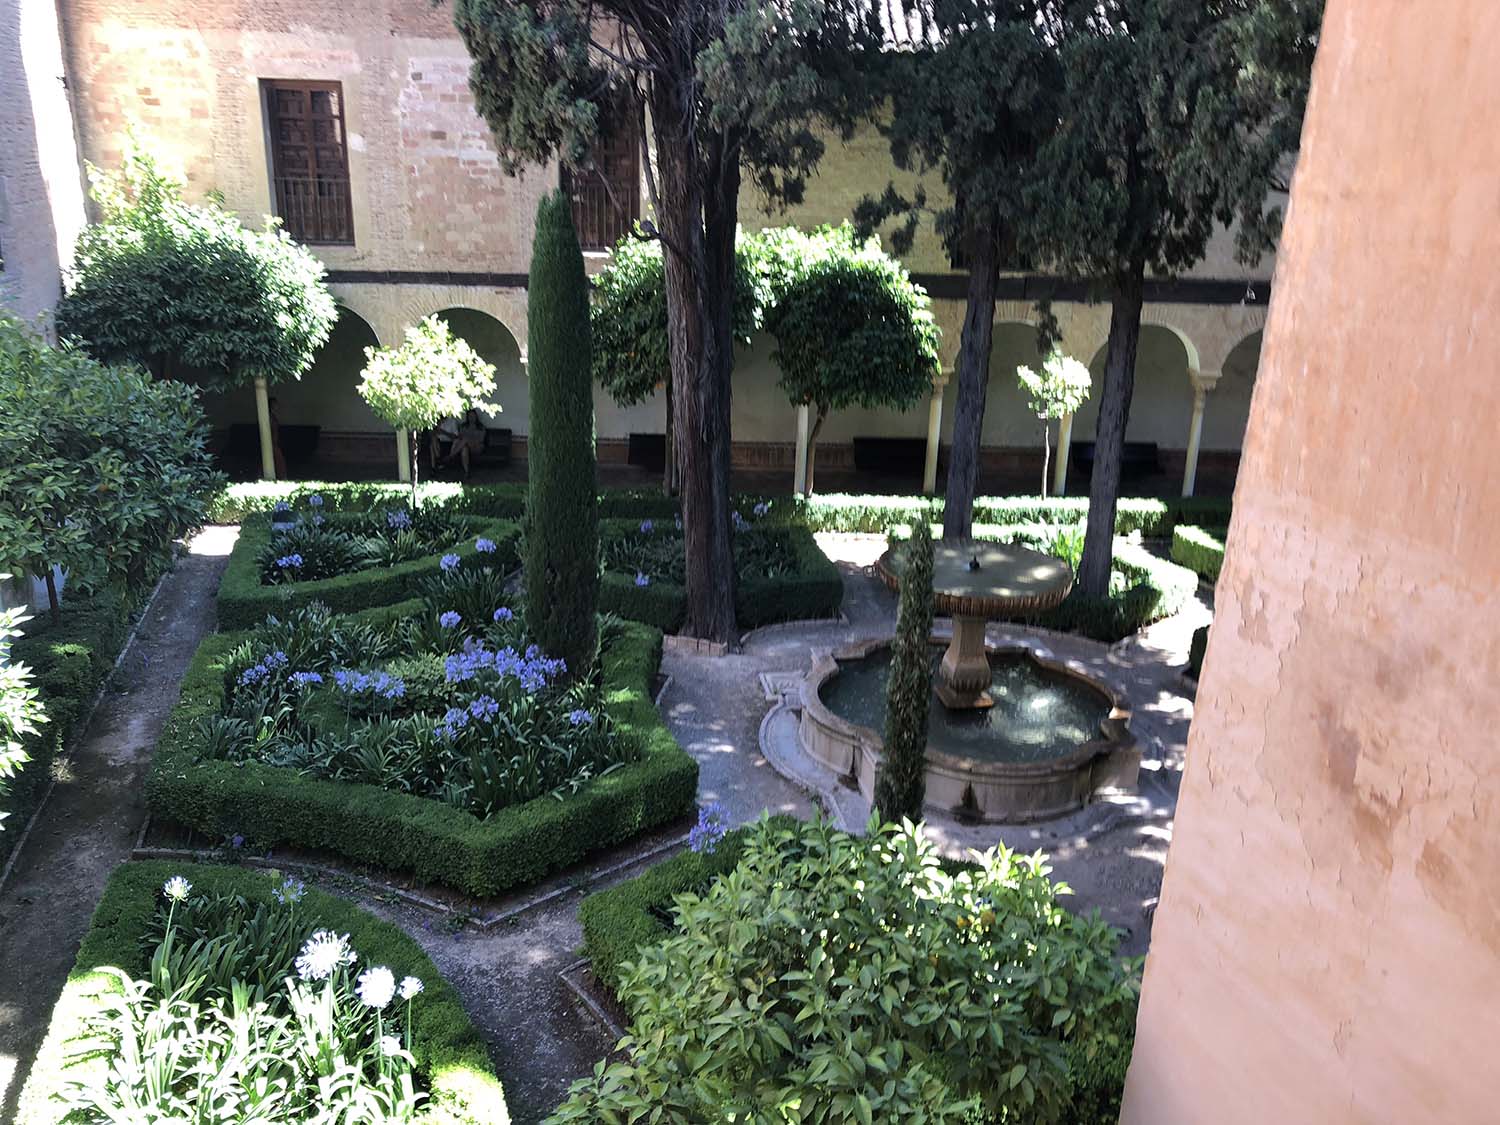 View of the Patio de Lindaraja from the Sala de los Ajimeces